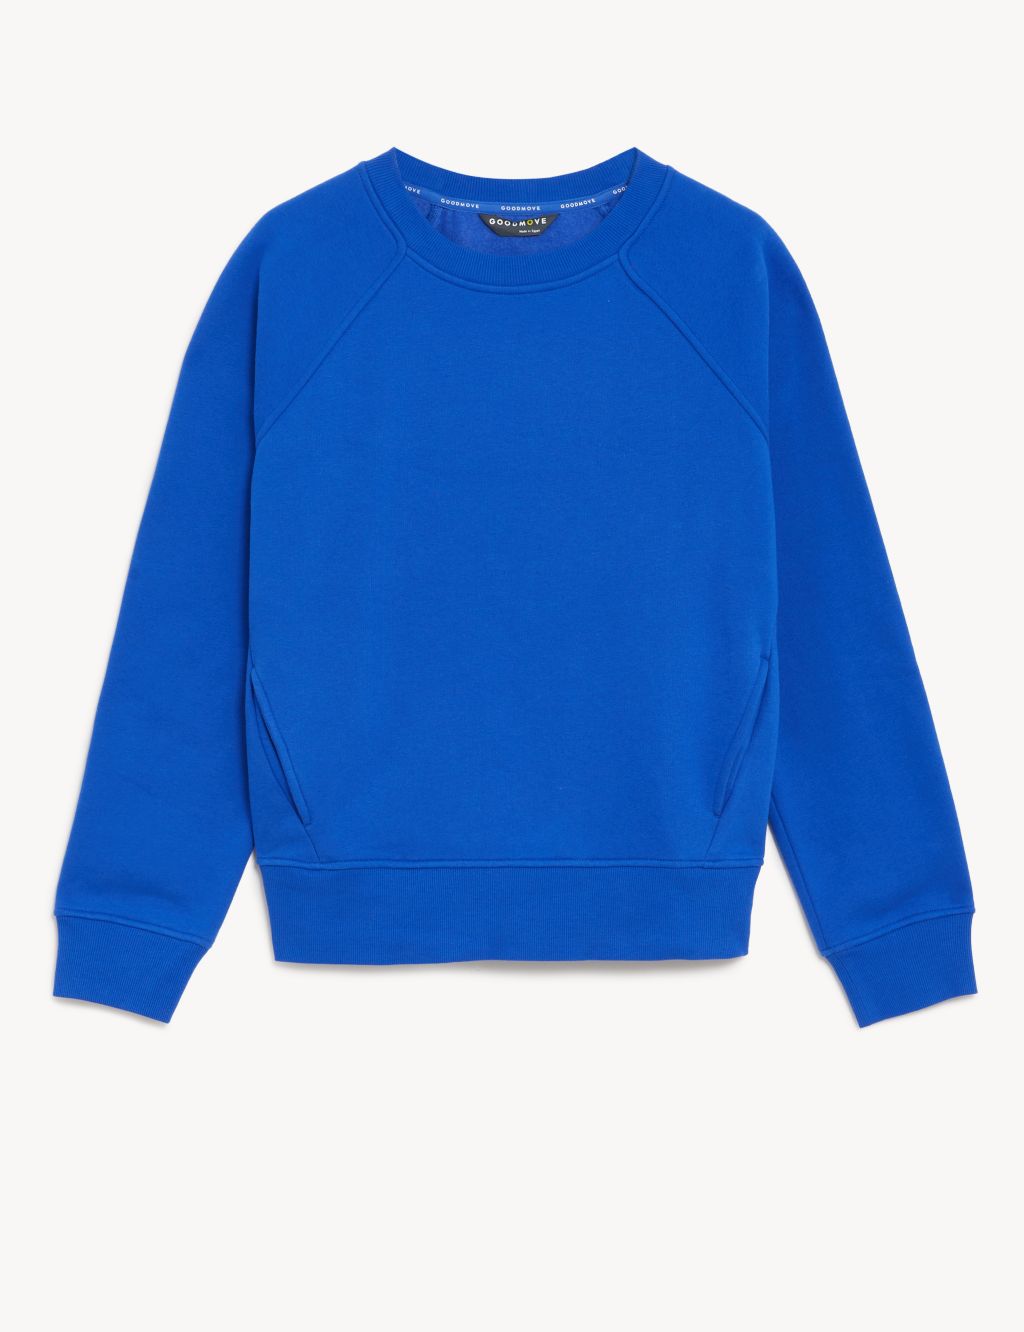 Women’s Blue Sweatshirts | M&S